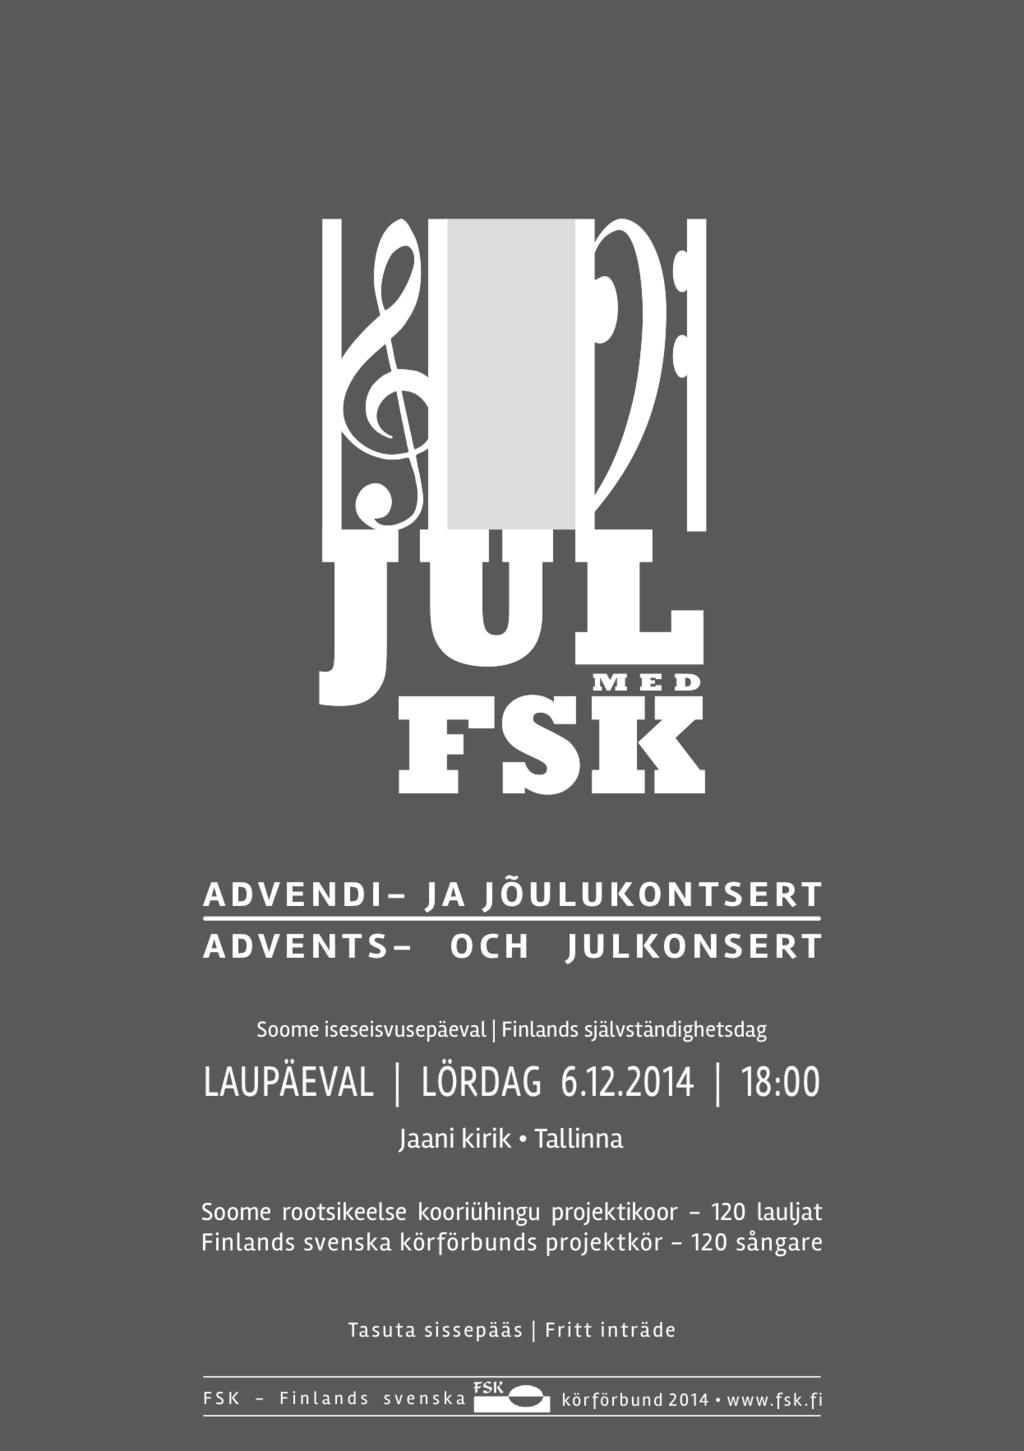 Affischer skickades till kyrkan där konserten skulle hållas. Även turistinformationen i Tallinn kontaktades för att be dem om lov att marknadsföra evenemanget via dem.